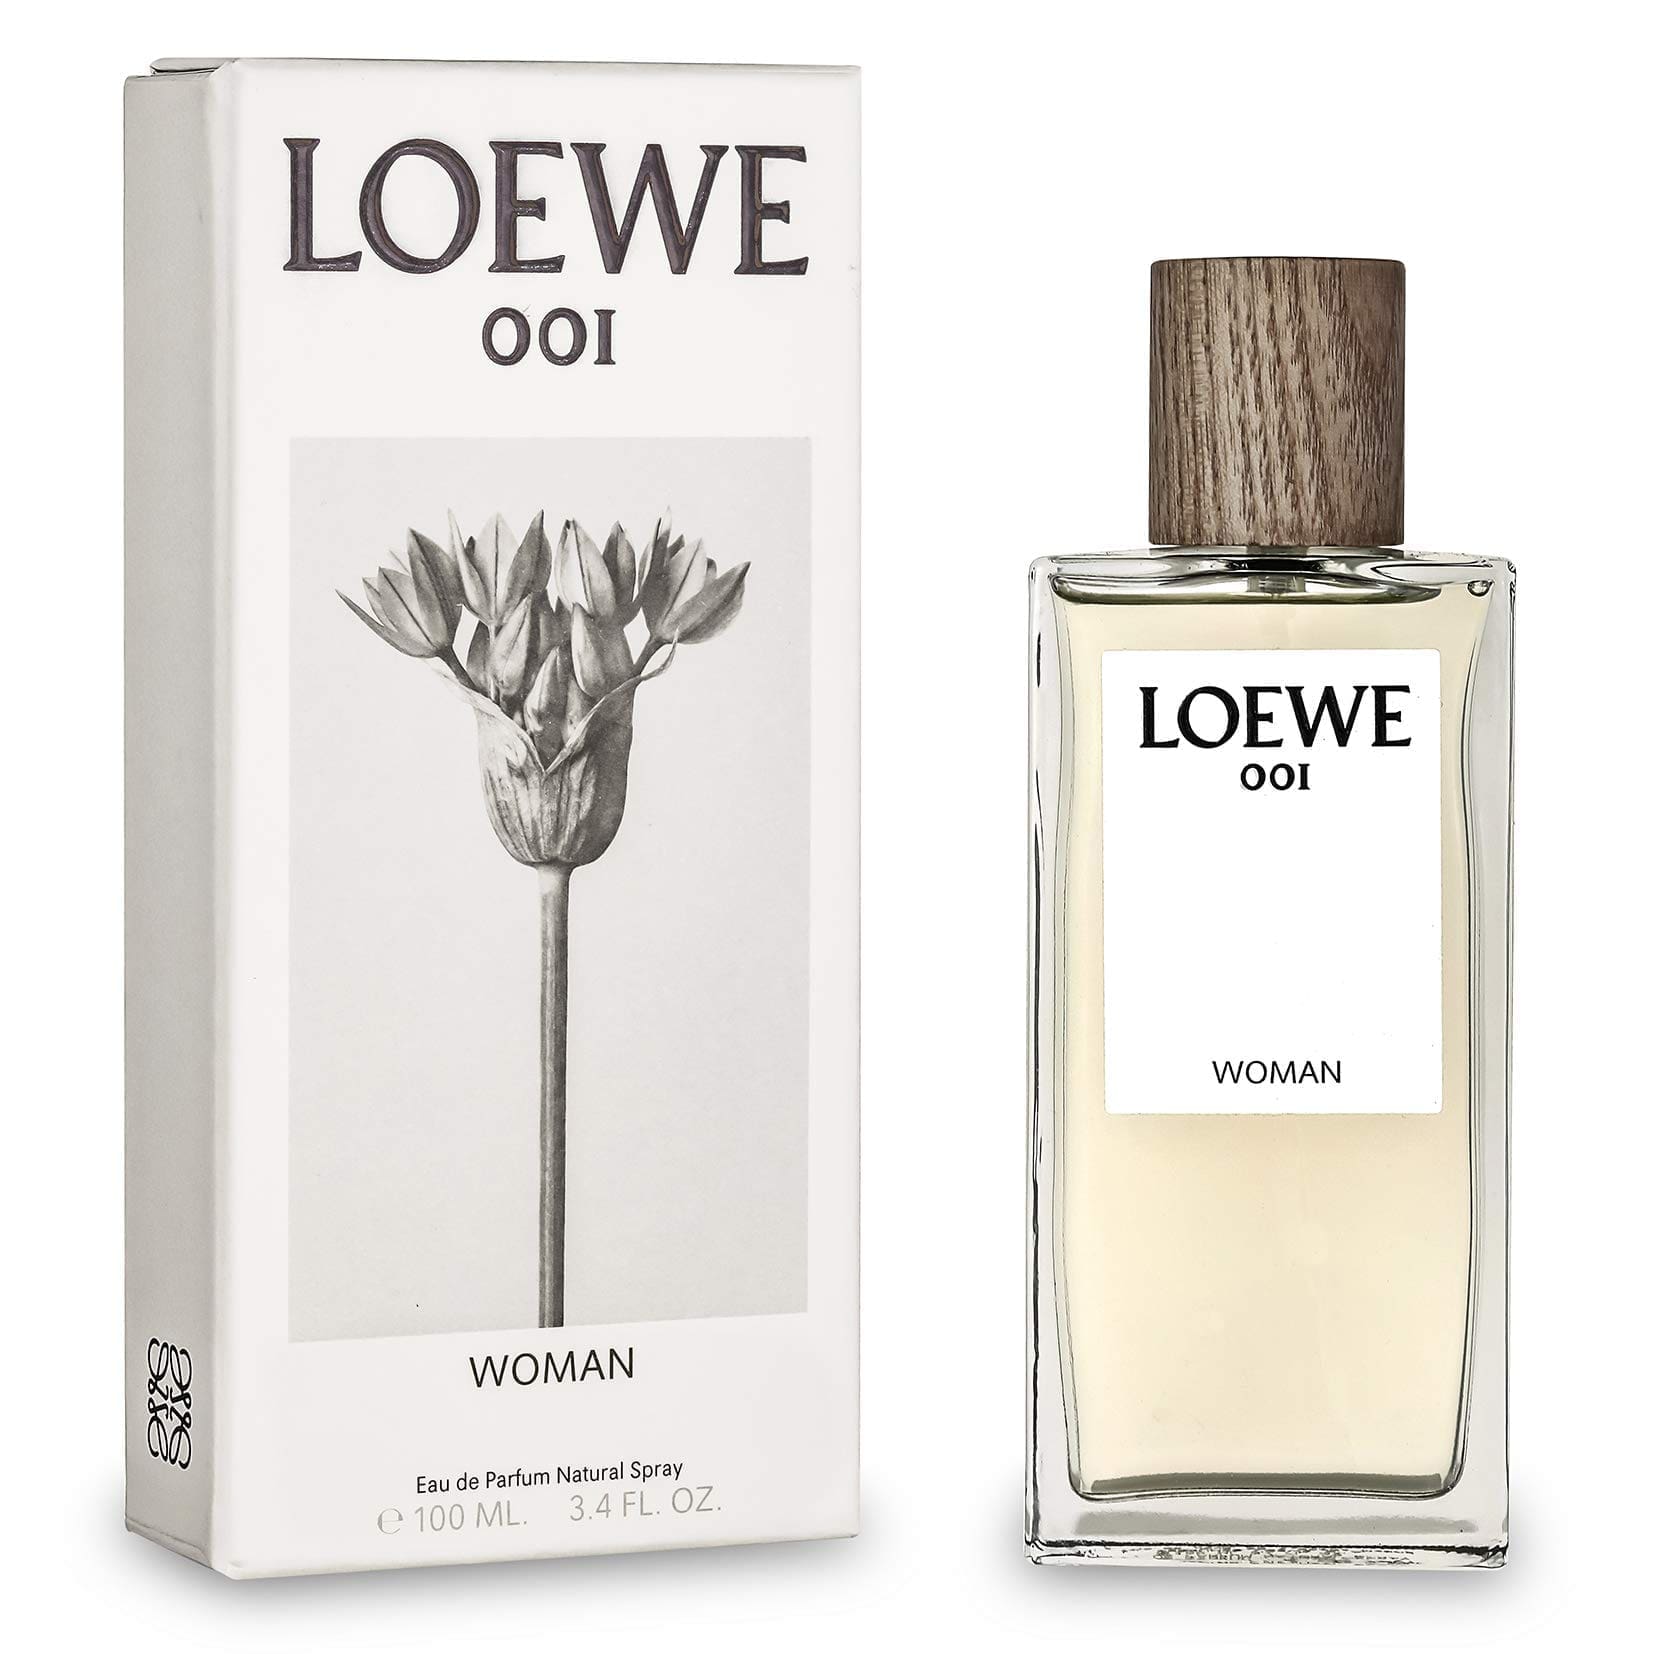 3225 Loewe 001 Woman Loewe 100 ml EDP